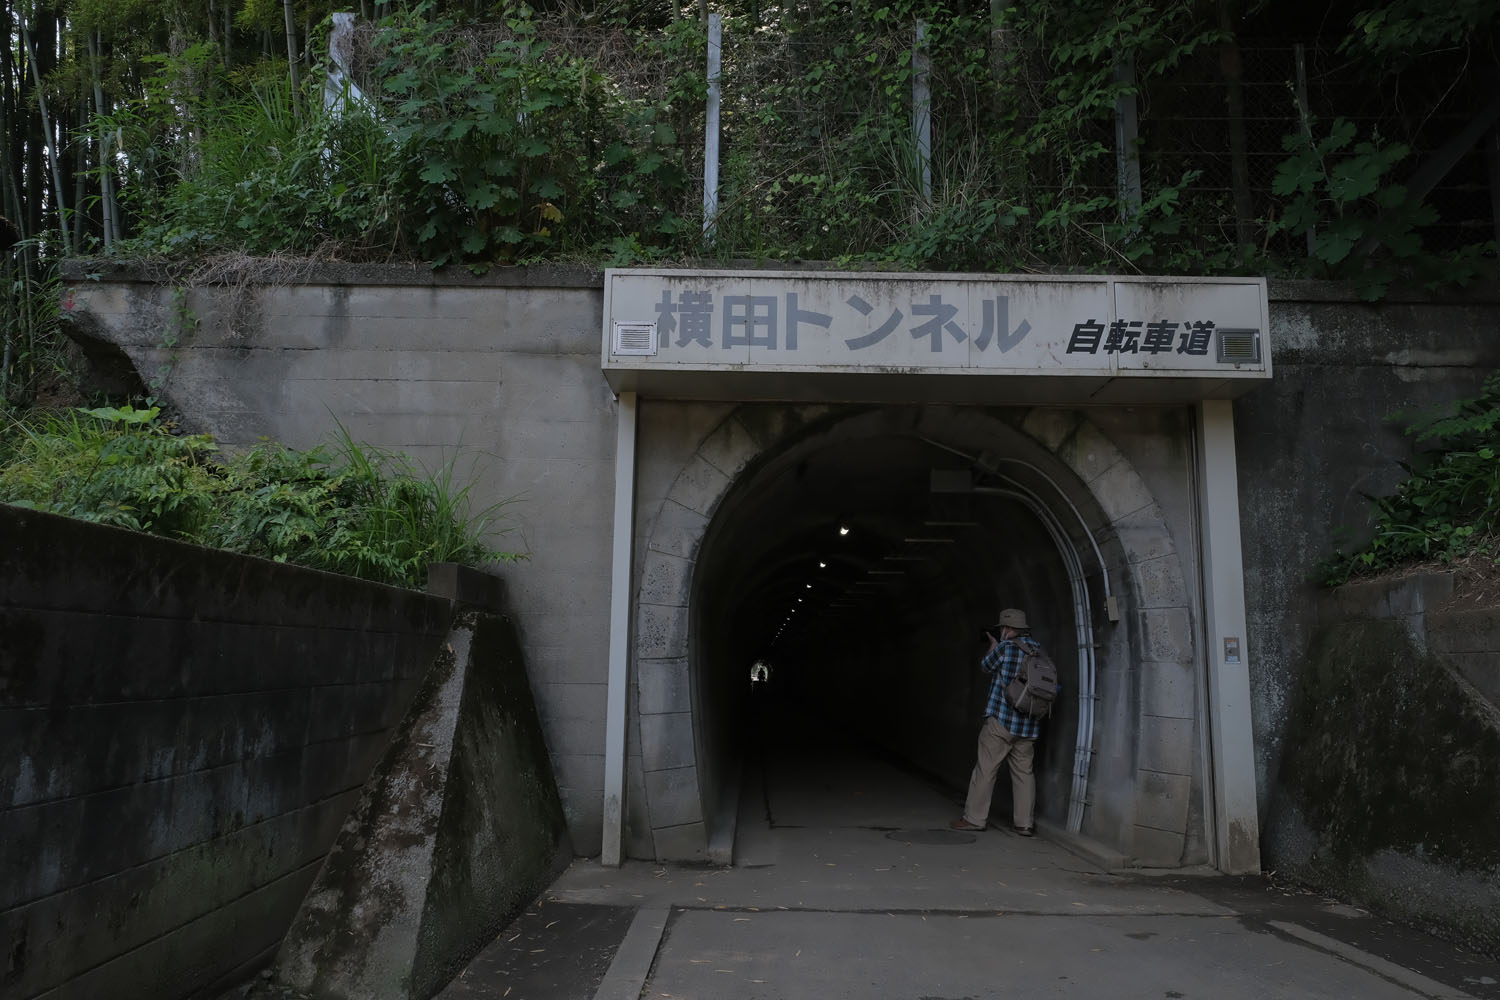 振り返って横田トンネルの出口。こちら側は鬱蒼（うっそう）とした山間部という雰囲気だ。ときおり散策している方を見かけた。